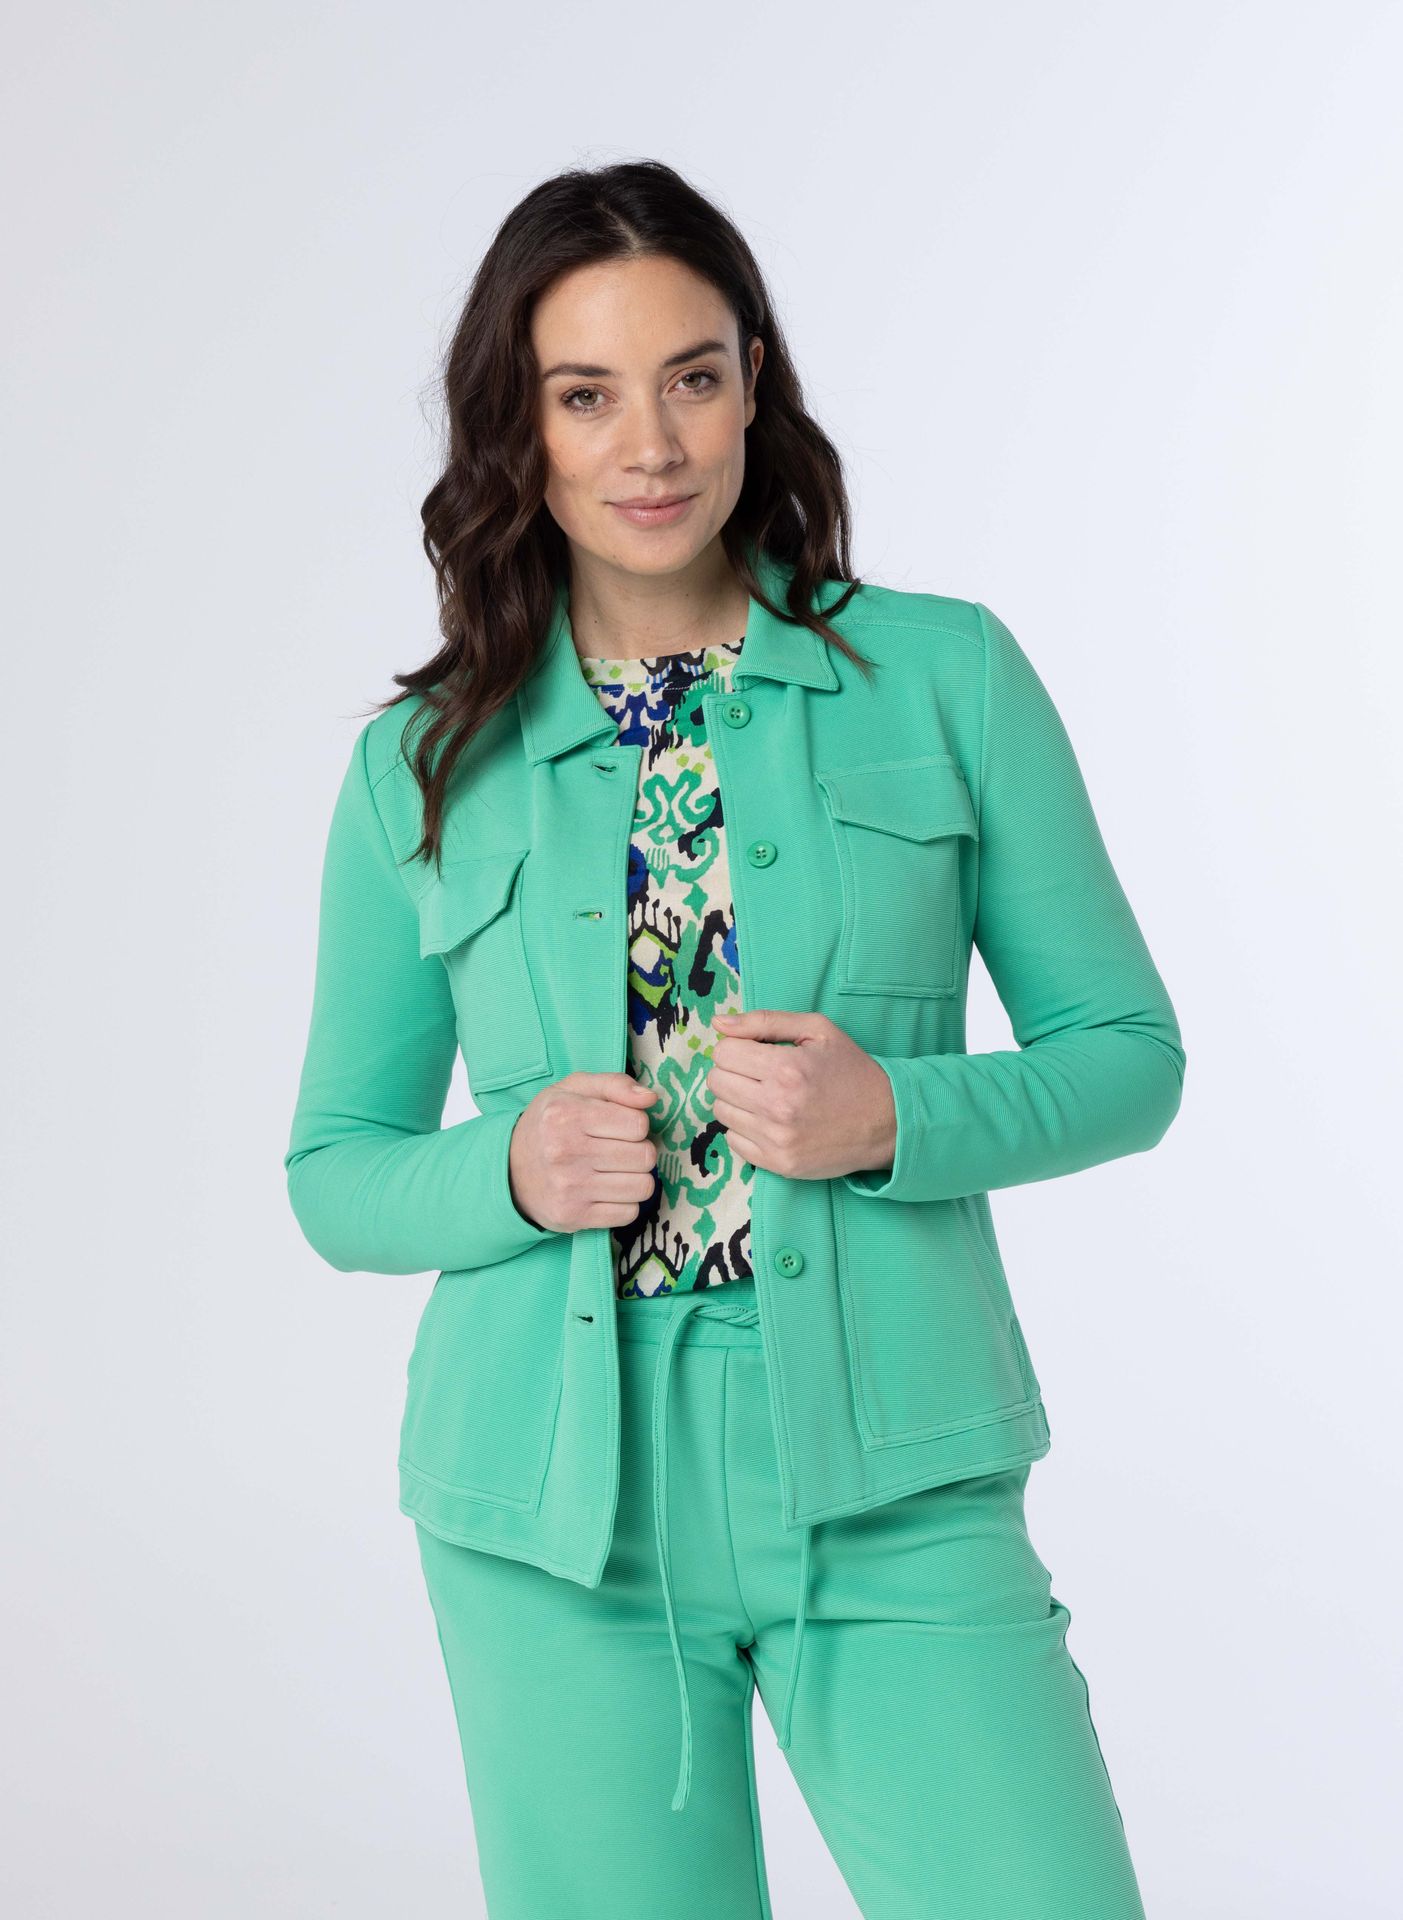 Norah Groene sportieve jacket green 213514-500